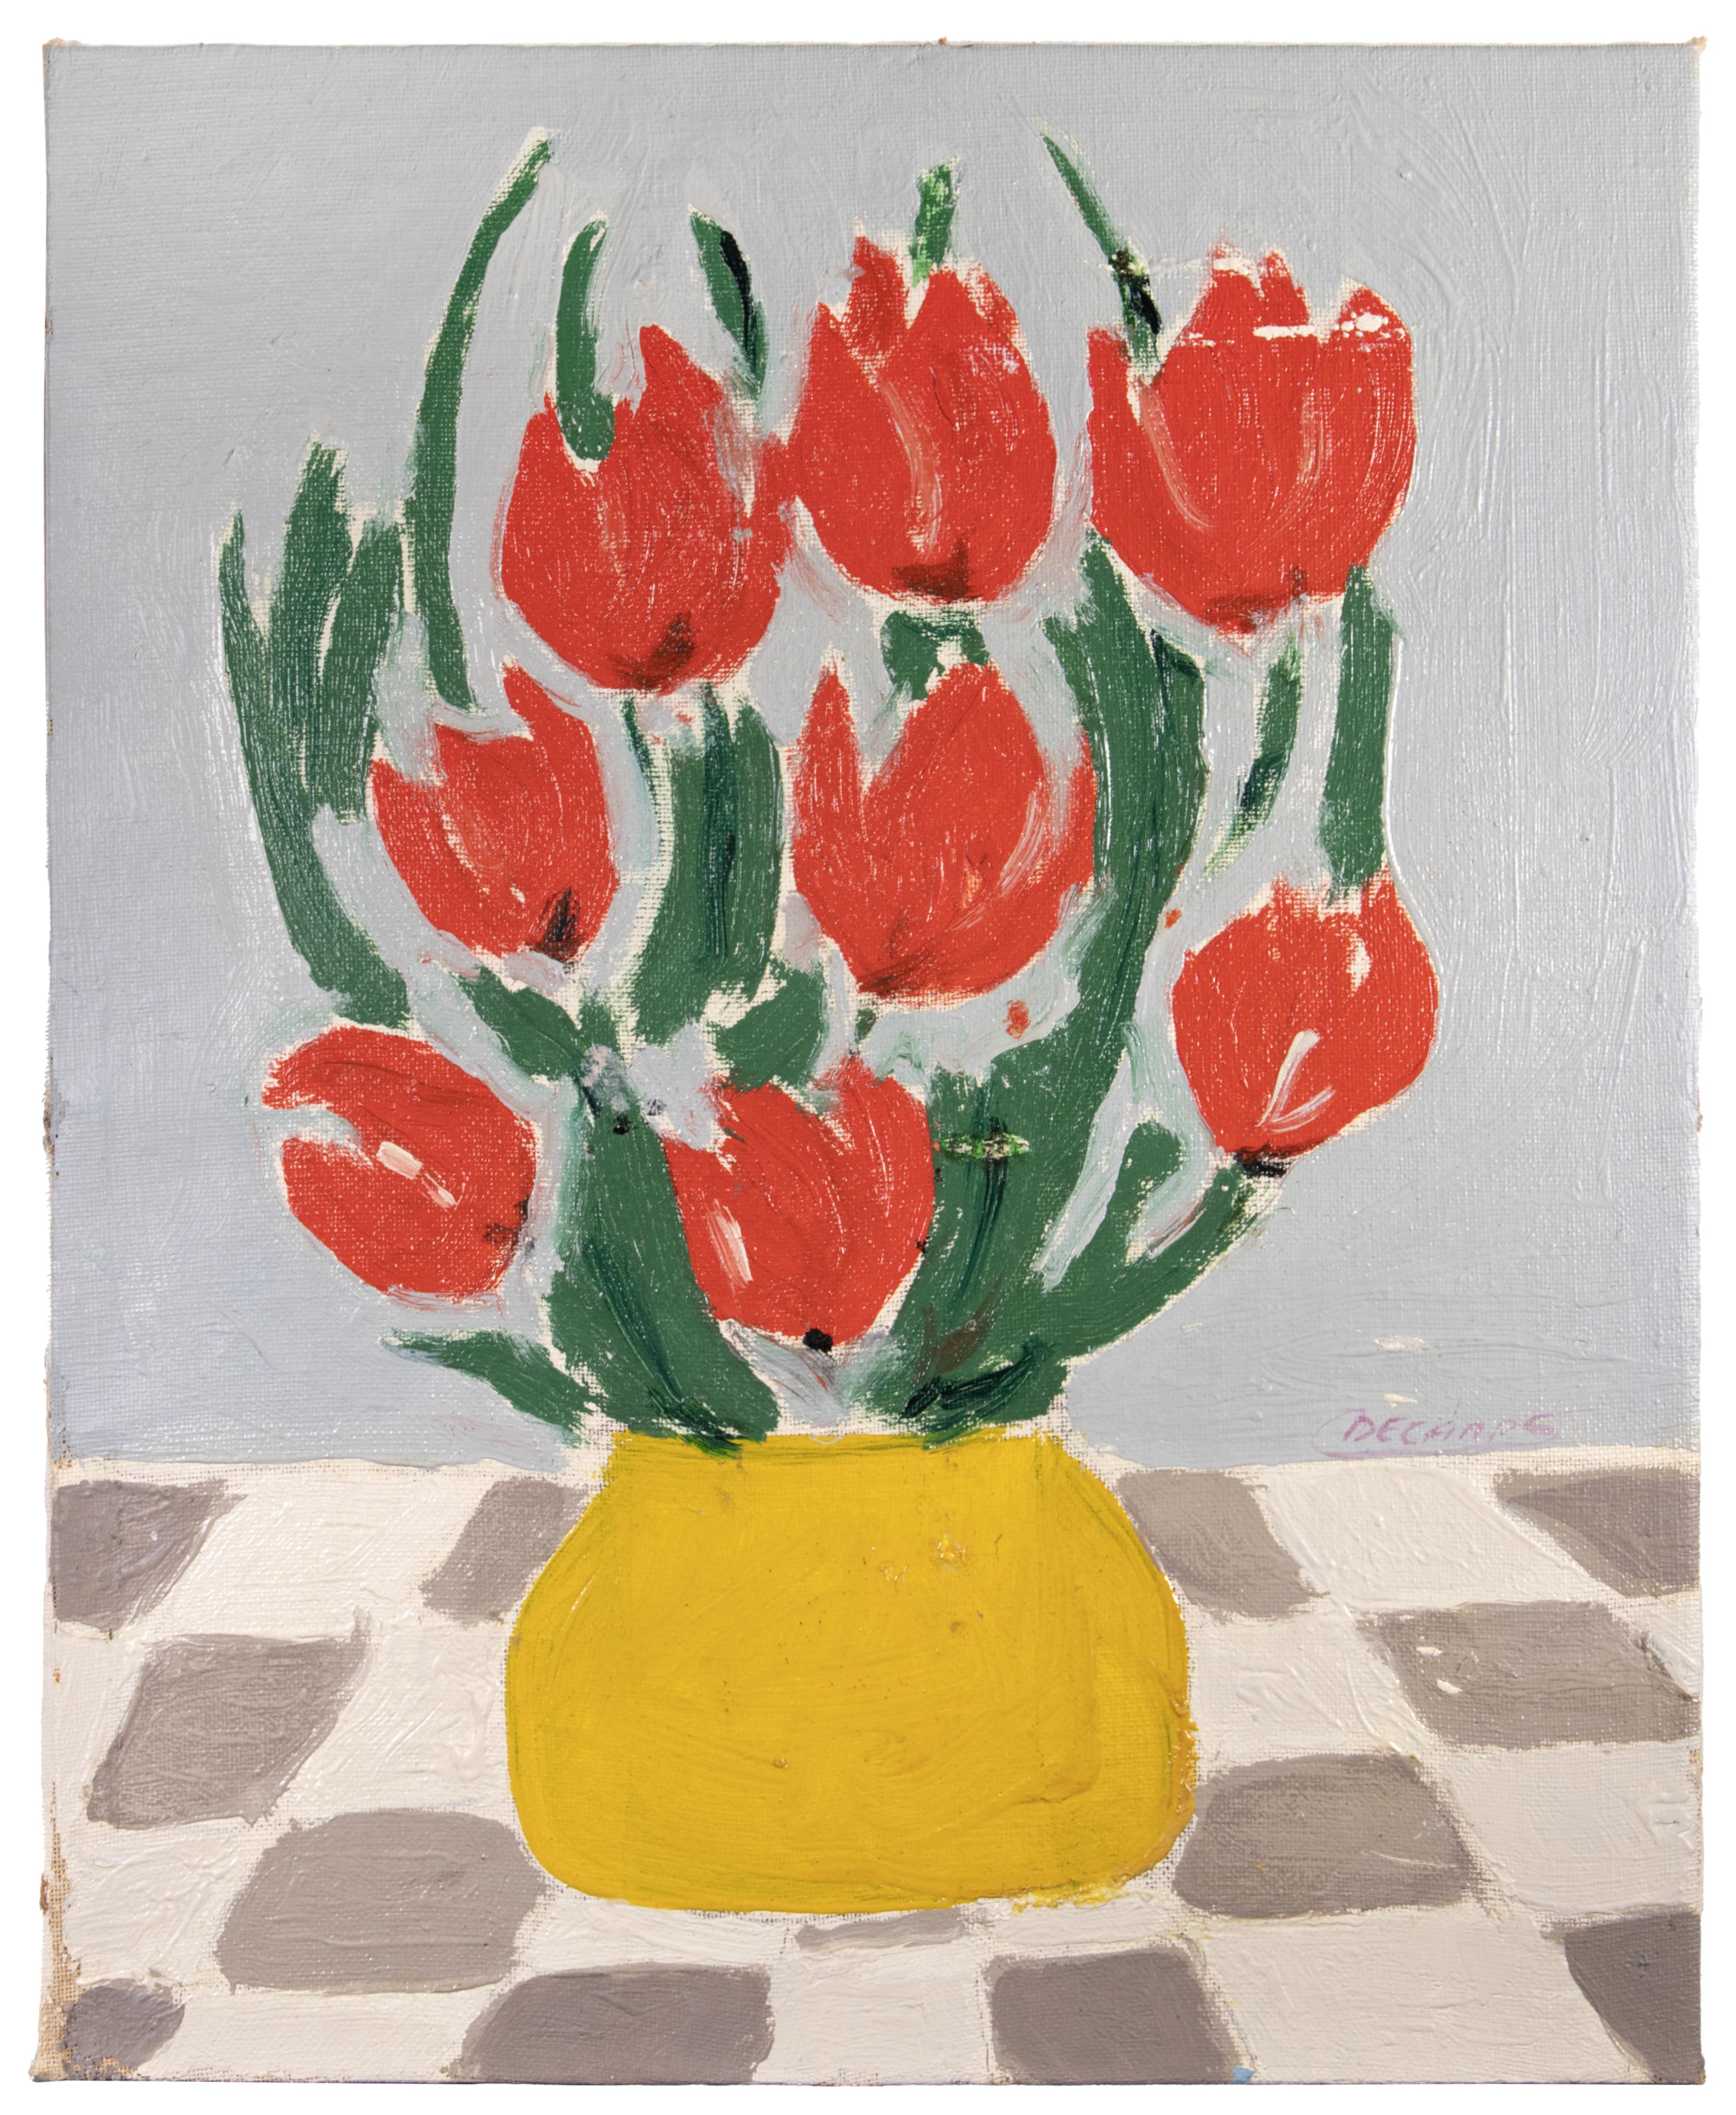 Nature morte aux fleurs rouges est une oeuvre d'art réalisée par Claude Decamps, milieu du 20e siècle.

Huile sur toile. 

25 x 20 cm.

Signé à la main en rouge dans la marge inférieure.

Bonnes conditions !